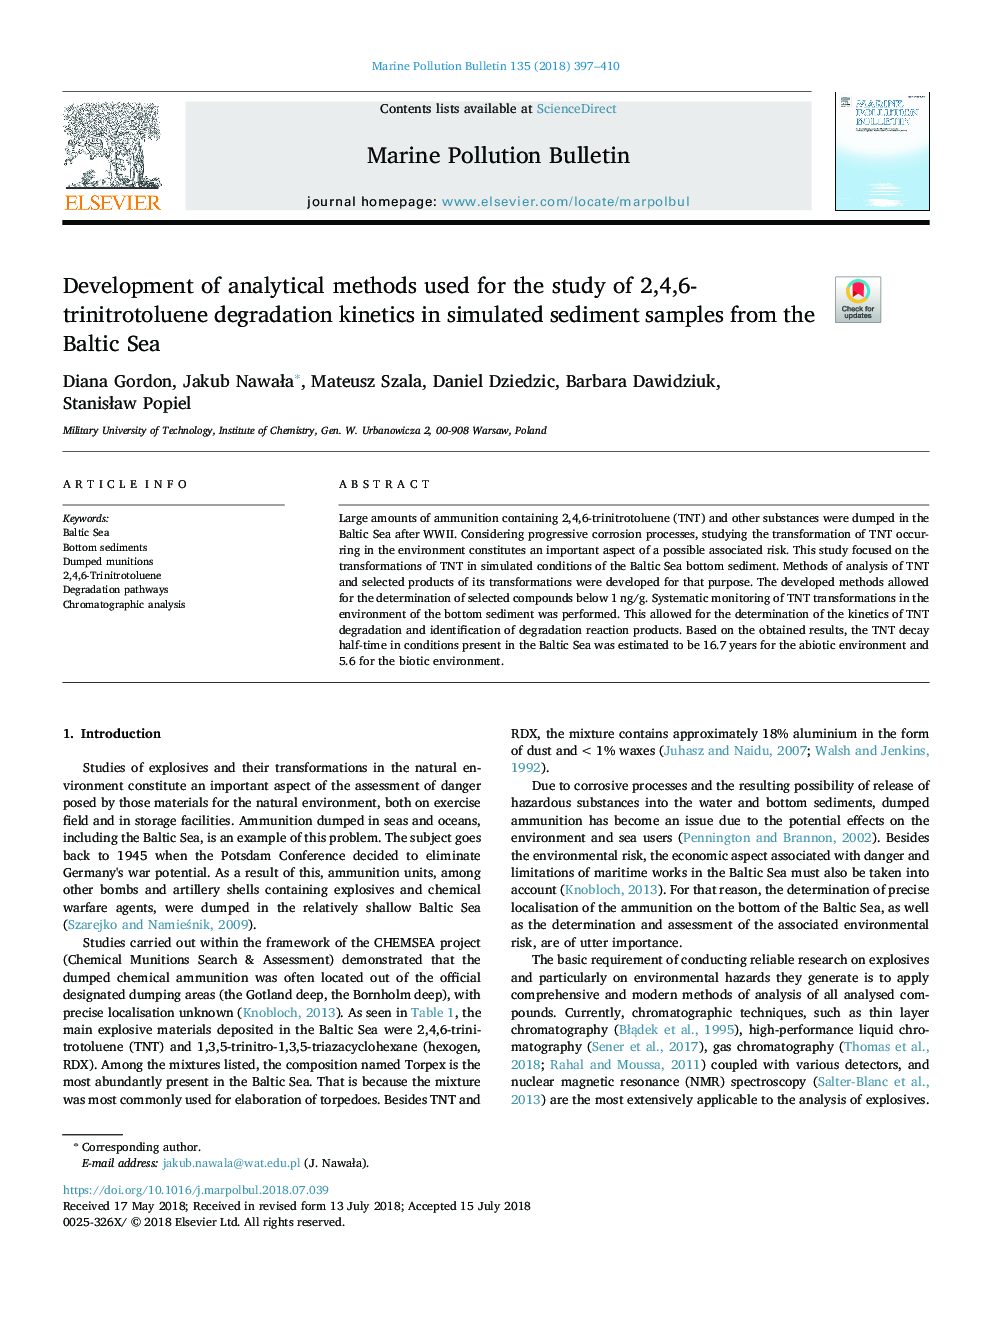 توسعه روش های تحلیلی مورد استفاده برای مطالعه سینتیک تجزیه 2،4،6-ترینیتروتوولول در نمونه های شبیه سازی رسوب از دریای بالتیک 